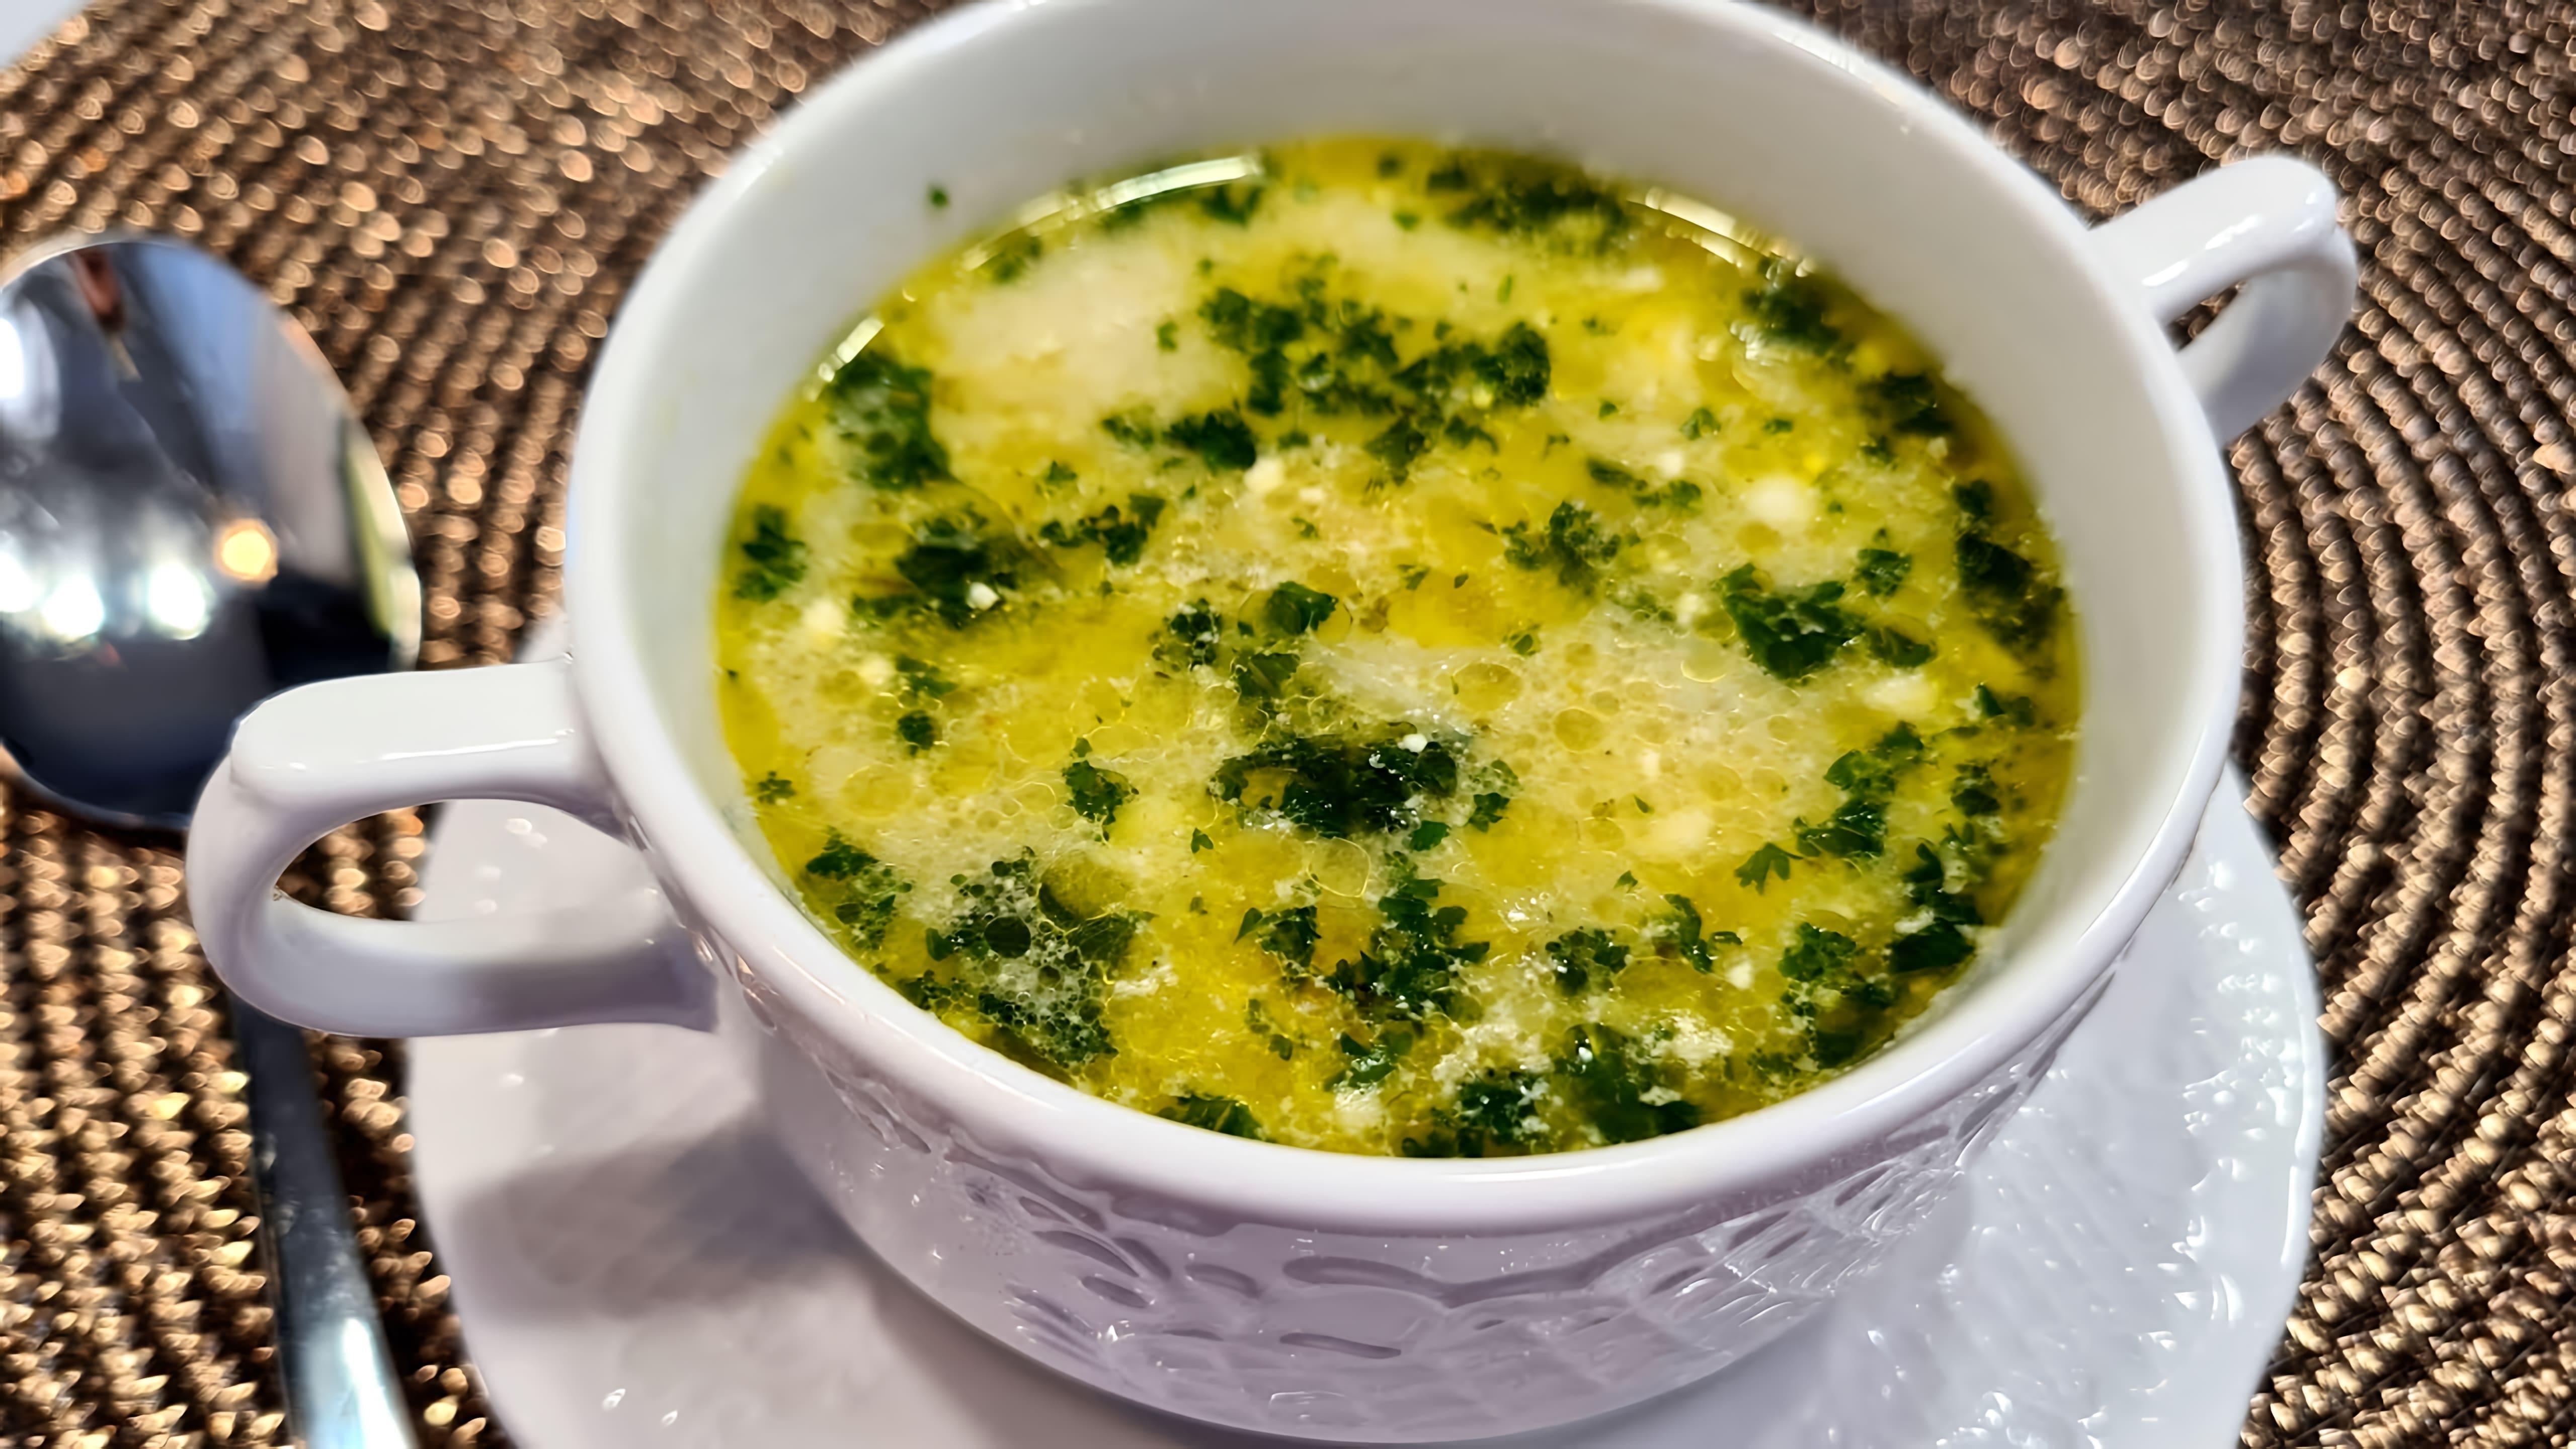 В данном видео демонстрируется рецепт польского куриного супа с солеными огурцами